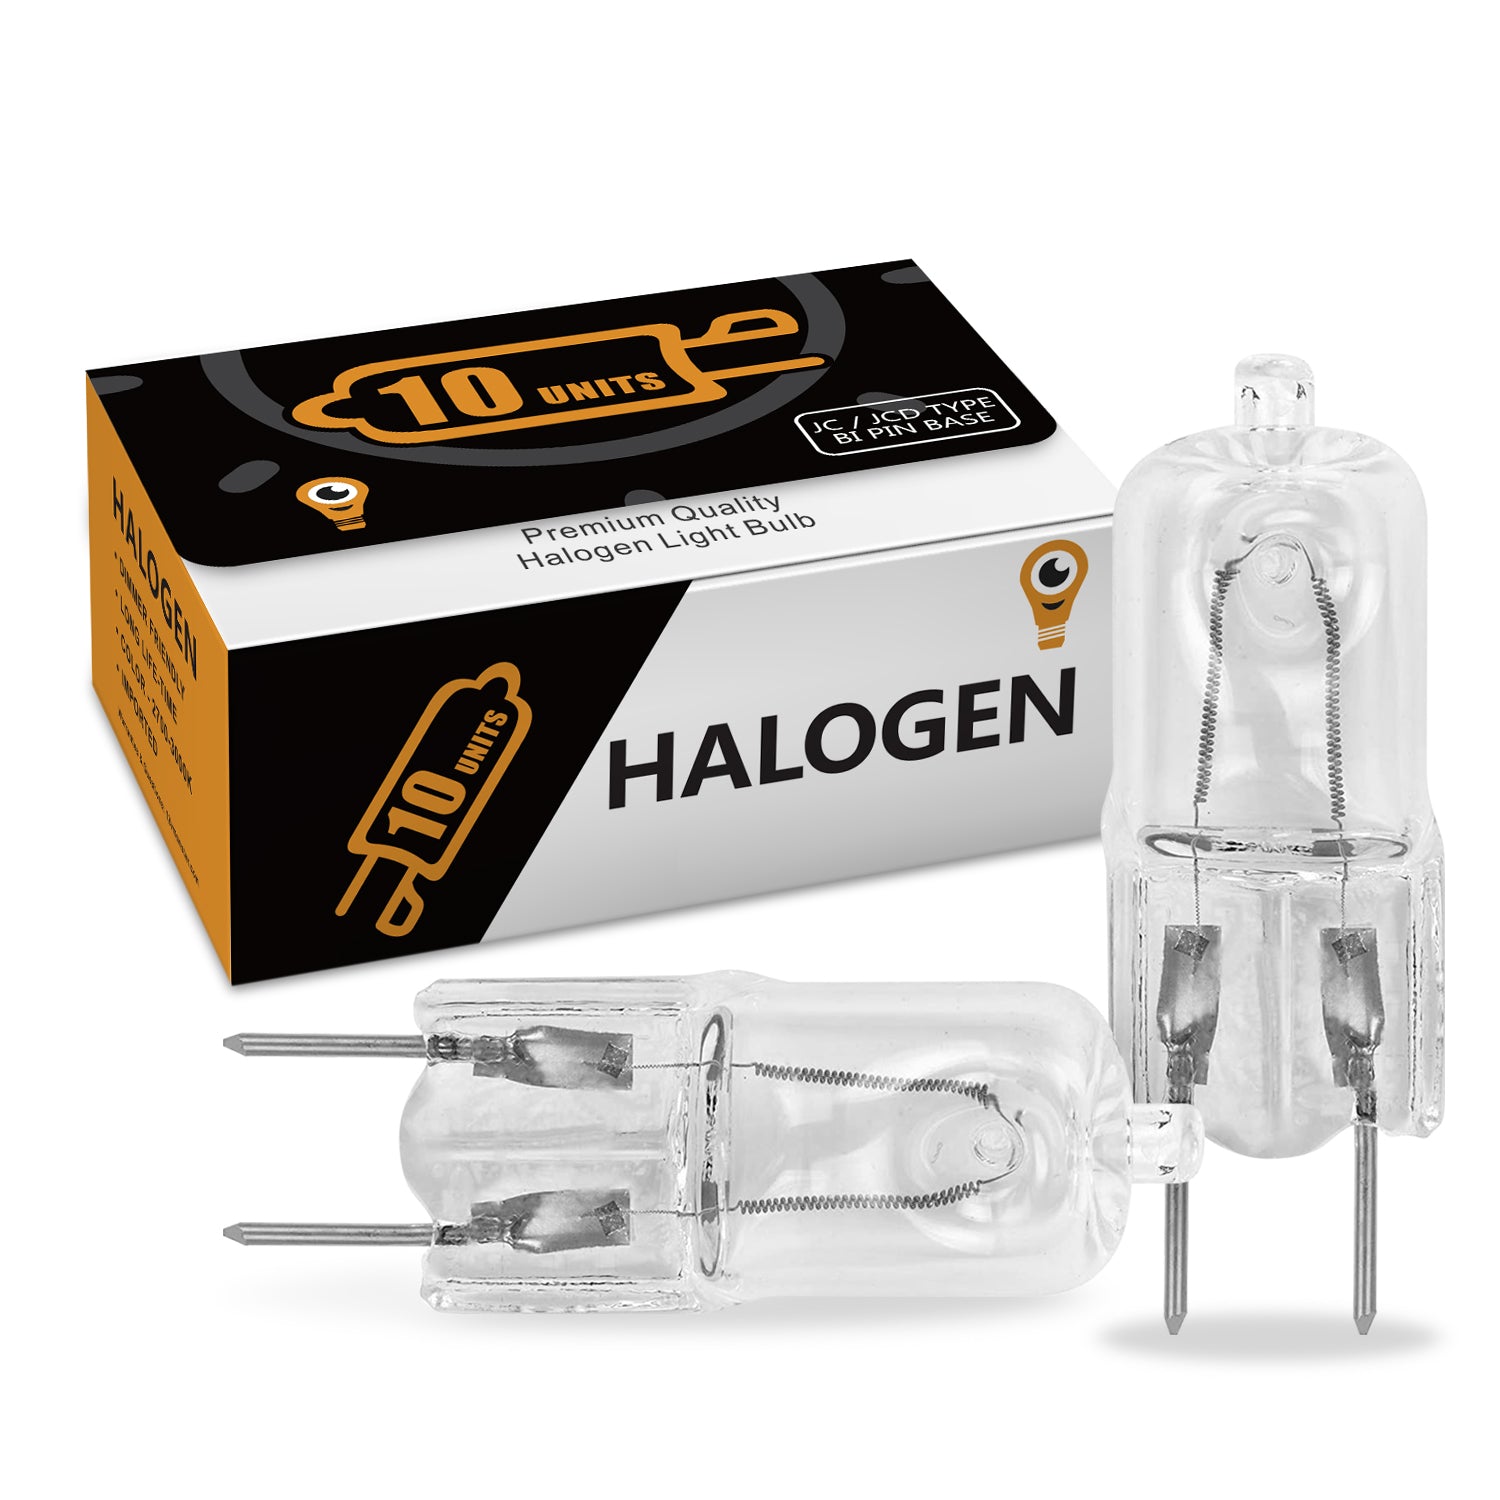 G8 Halogen JCD Light Bulb 120V 75W 100W Lighting - 12VMonster Lighting